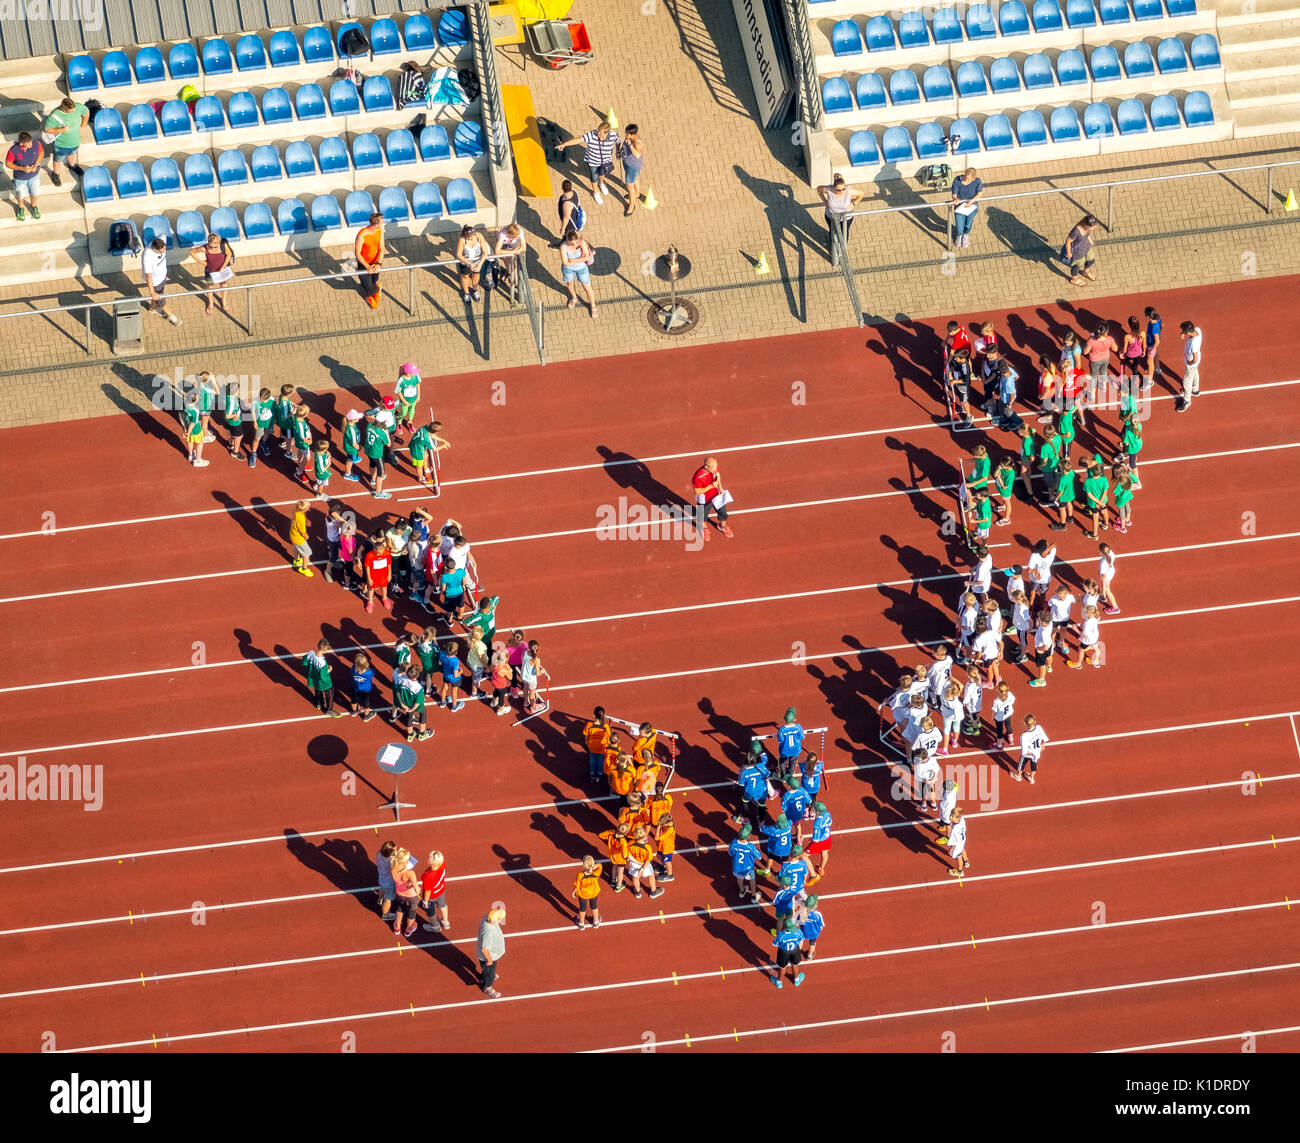 Competizione Sportiva, Nazionale Giochi della gioventù, gli studenti raccogliere sulla pista rossa, Jahn Stadium, Bottrop, la zona della Ruhr, Renania settentrionale-Vestfalia Foto Stock